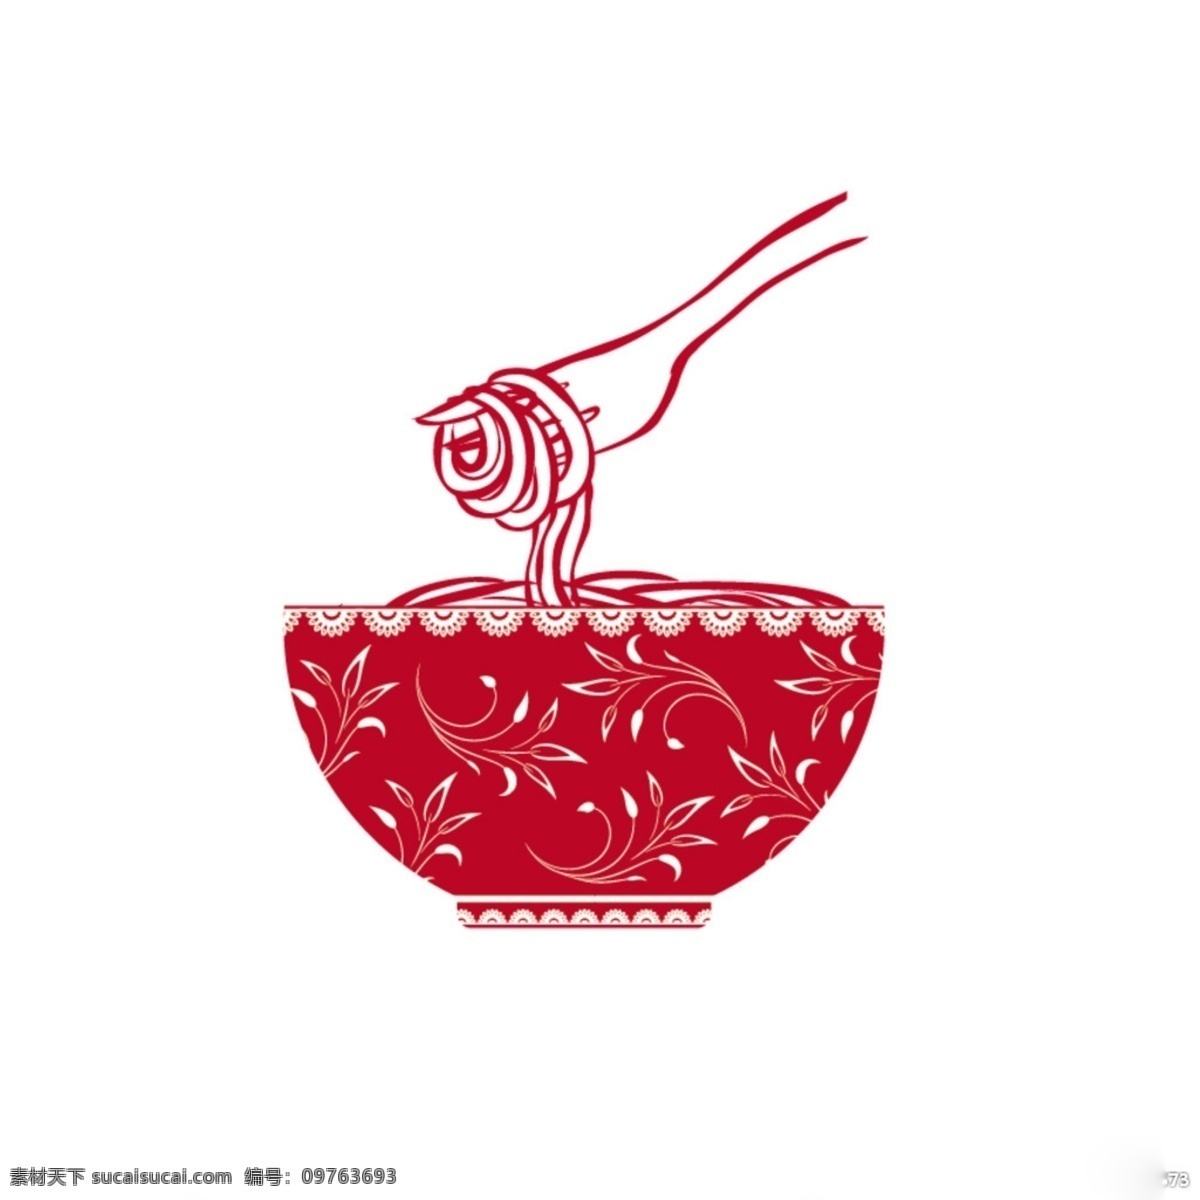 面食 剪纸 制作 logo logo设计 红色 中国风 剪纸效果 白色